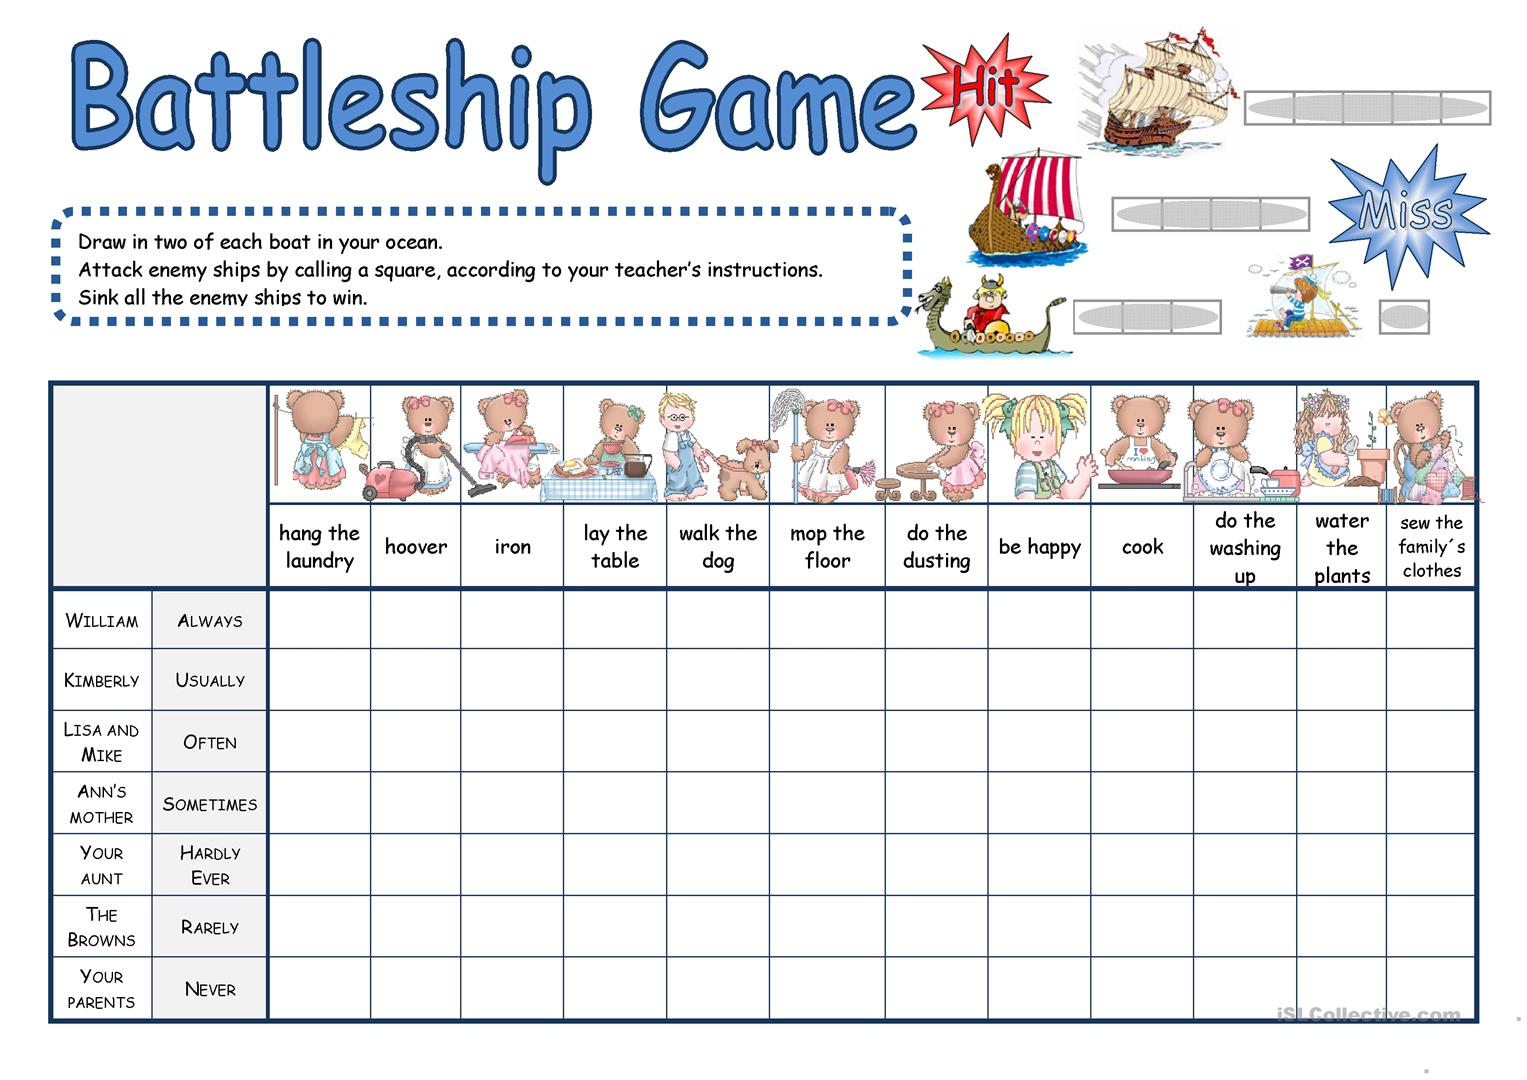 Battleship Game Worksheet - Free Esl Printable Worksheets Made - Free Printable Battleship Game